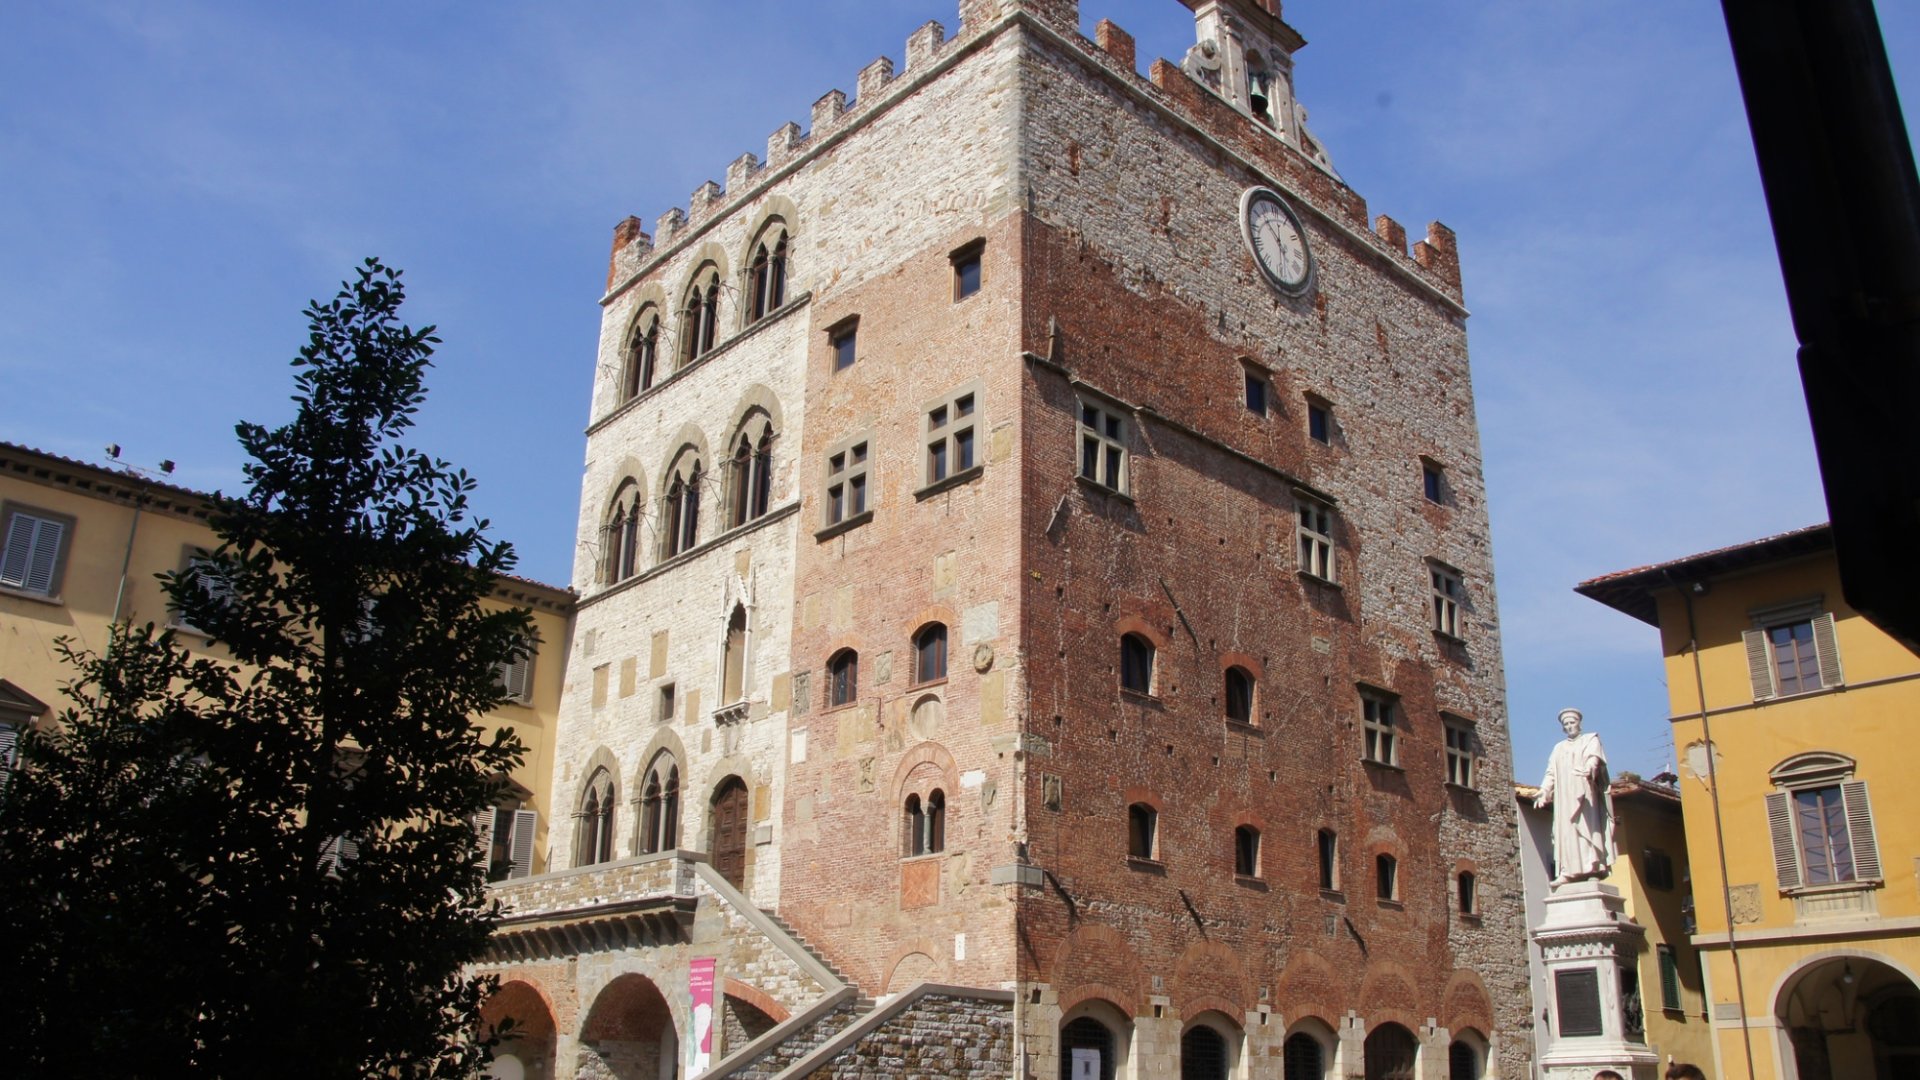 Palazzo Pretorio of Prato